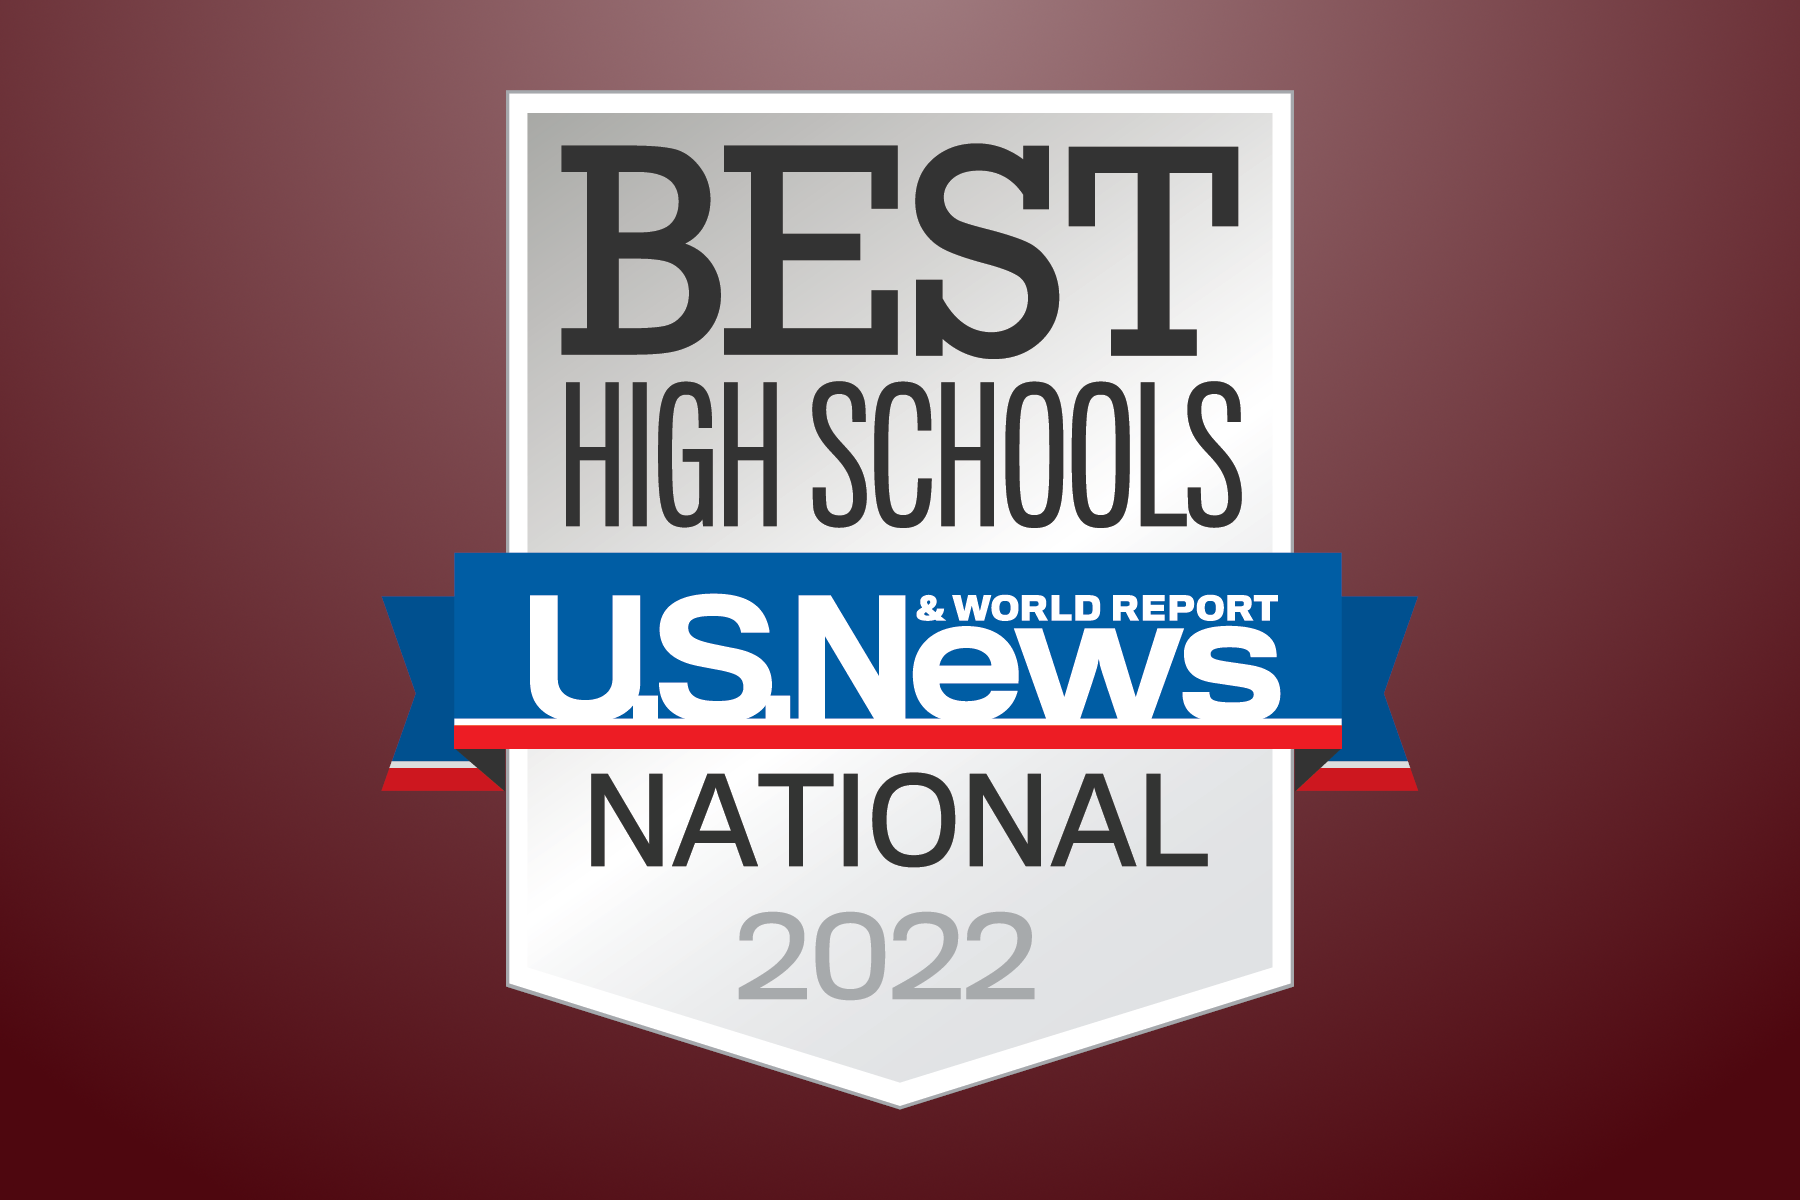 Best High School U.S. News & World Report National 2022